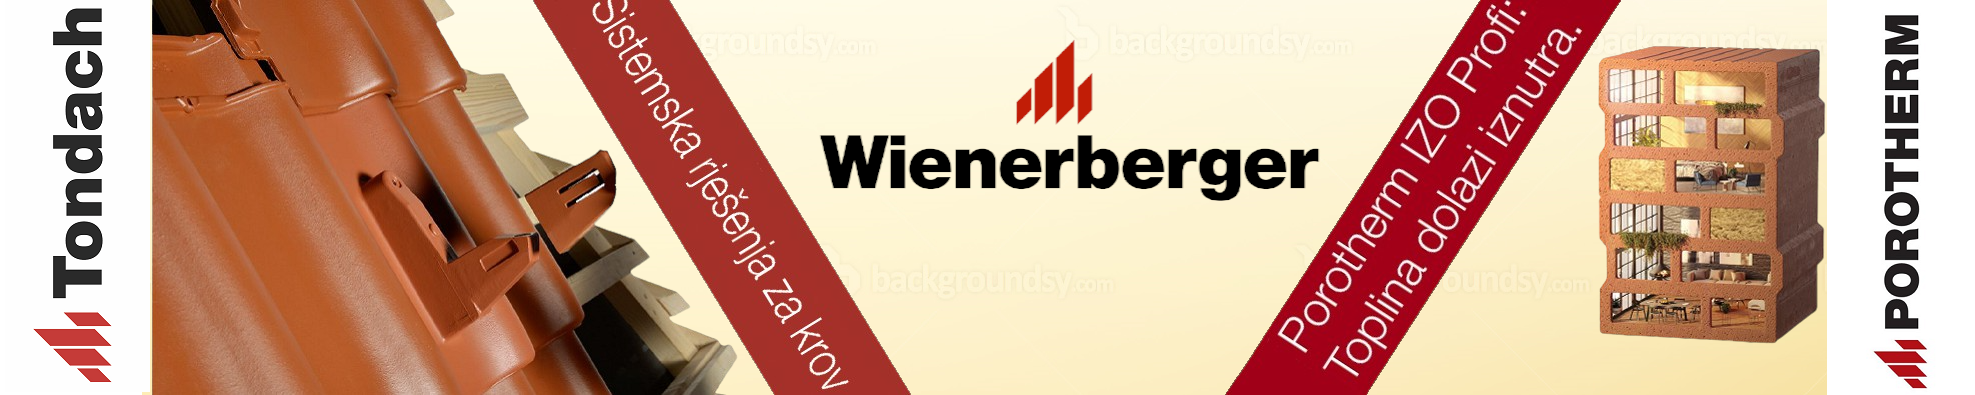 wienerberger banner2.png